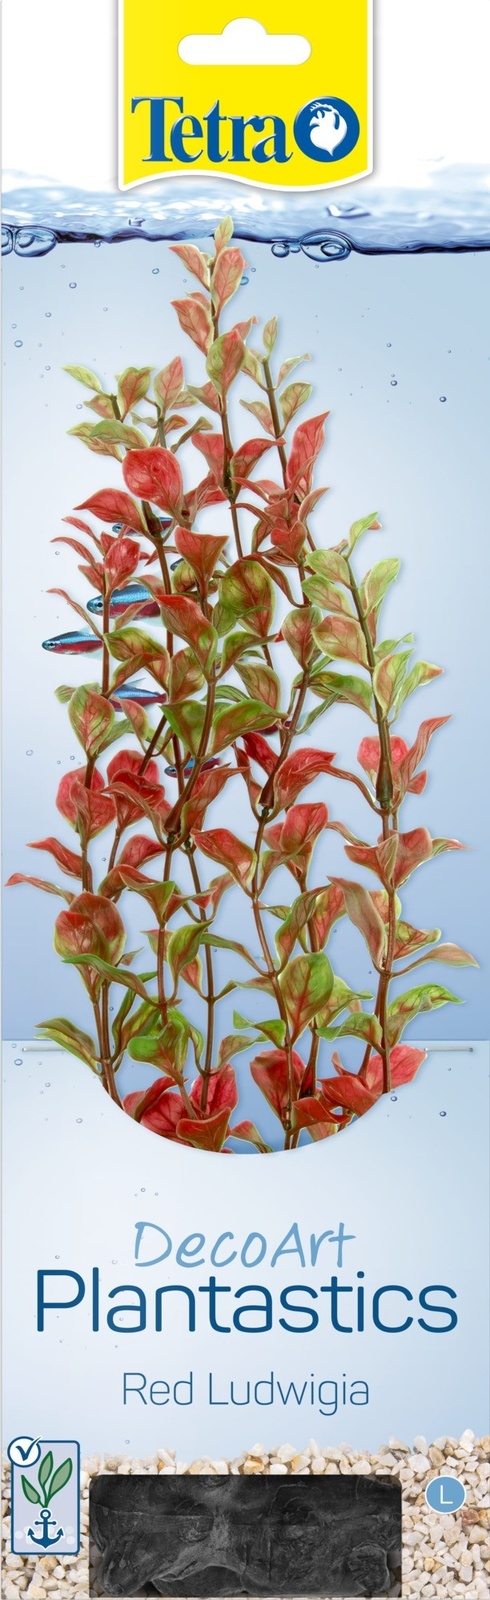 Tetra (оборудование) Tetra (оборудование) растение DecoArt Plantastics Red Ludvigia 30 см (115 г) фотографии